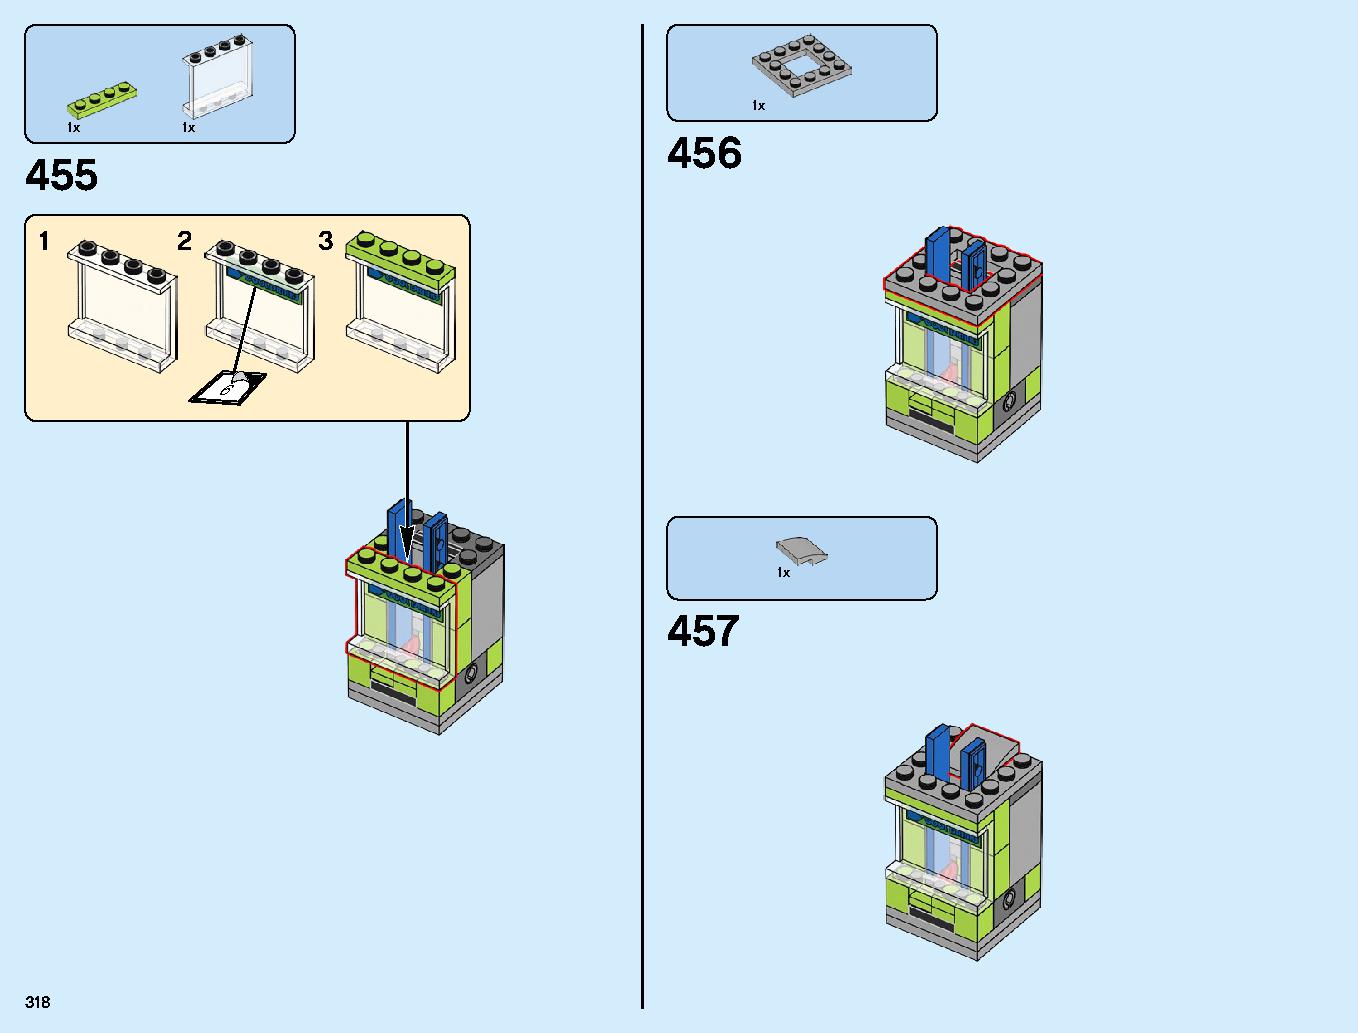 ニンジャゴーシティ・ポートパーク 70657 レゴの商品情報 レゴの説明書・組立方法 318 page